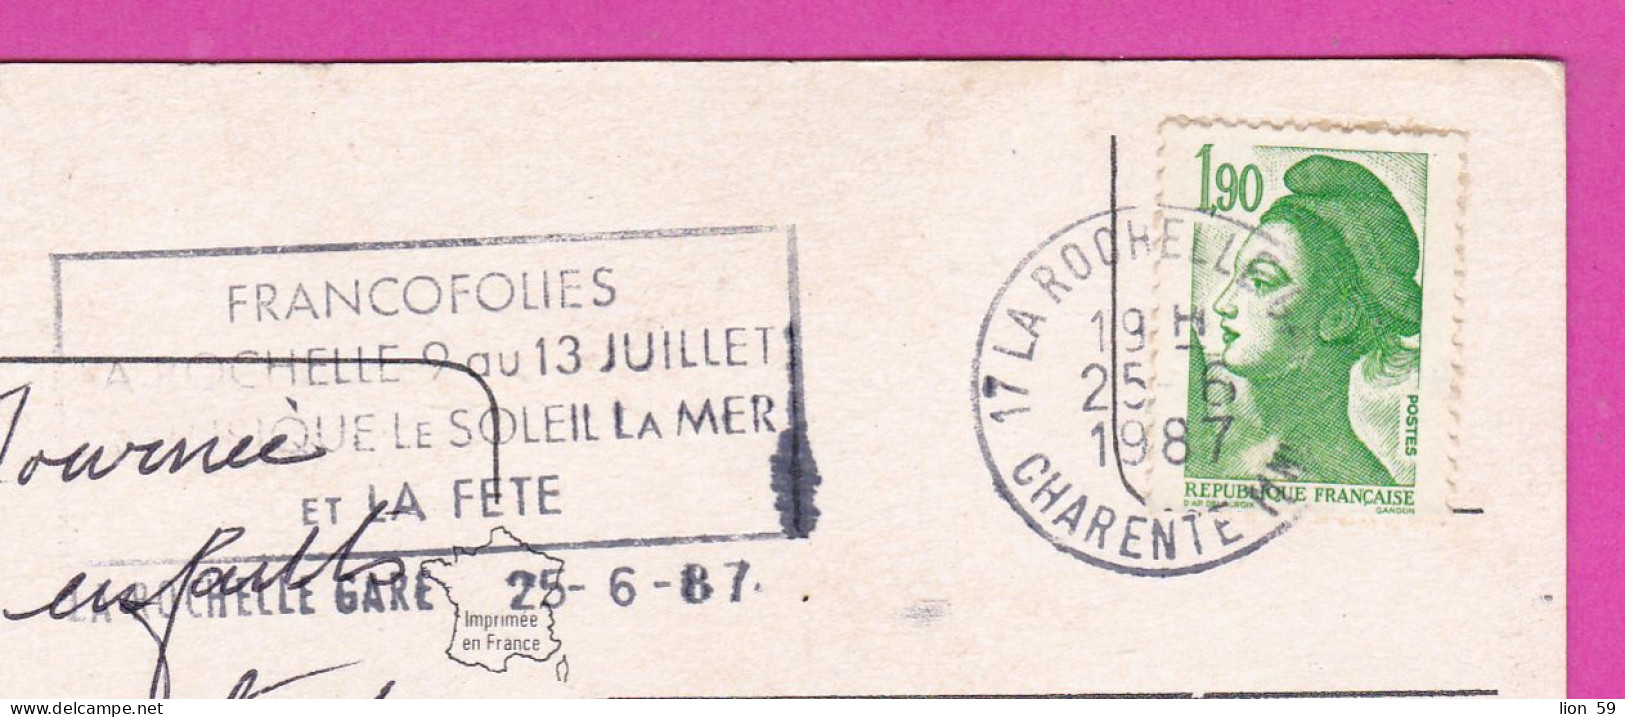 294219 / France - La Rochelle En Aunis PC 1987 USED 1.90 Fr. Liberty Of Gandon , Flamme Musique Le Soleil La Mer Et La F - 1982-1990 Liberté De Gandon